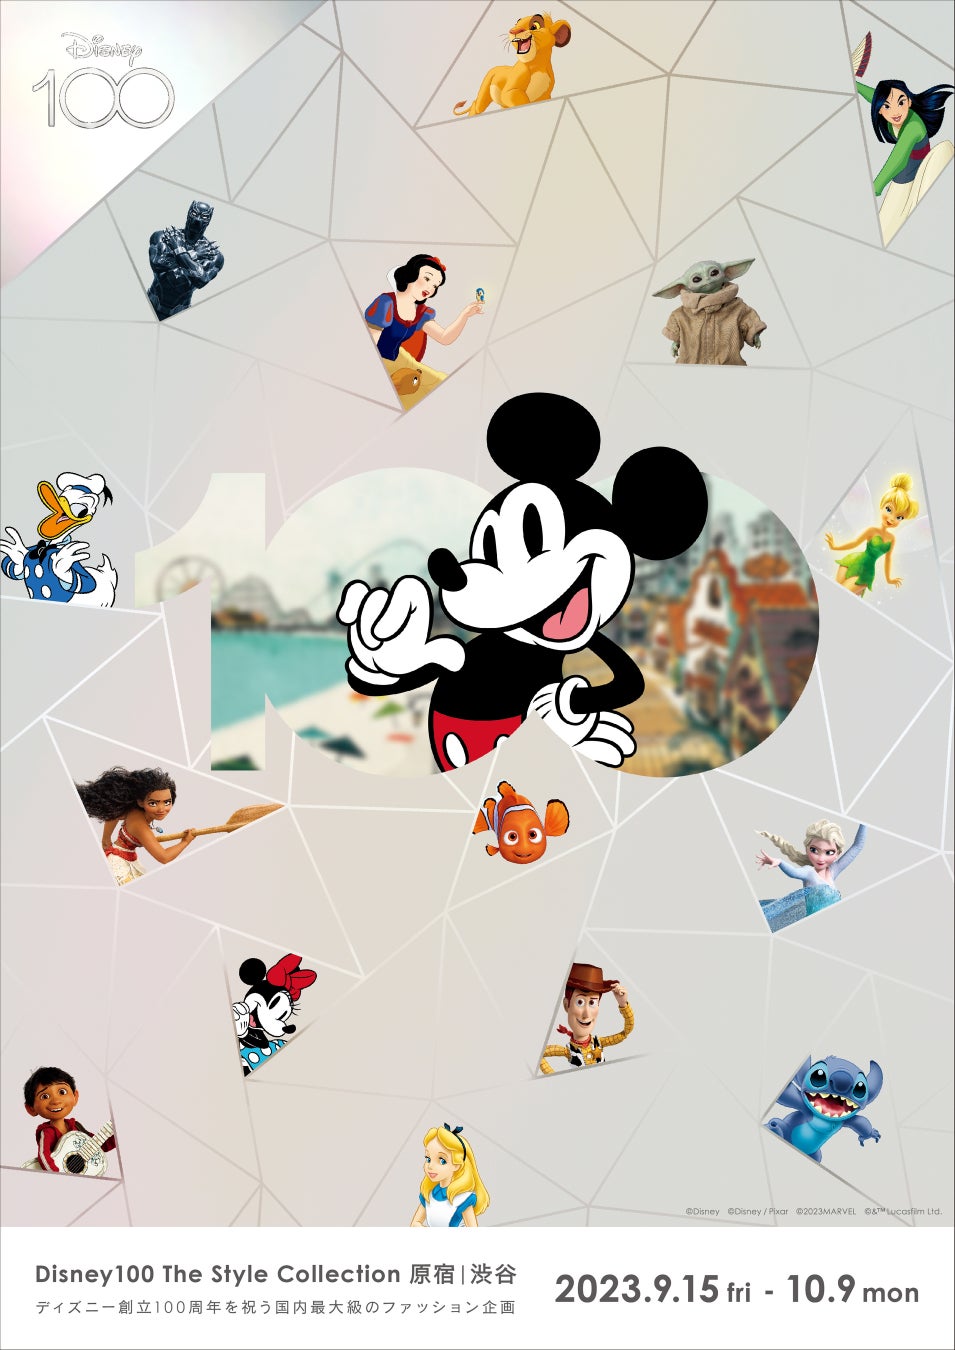 ラフォーレ原宿、エリア最大級となるファッションイベント「Disney100 The Style Collection 原宿｜渋谷」をディズニー創立 100 周年の一環として開催！